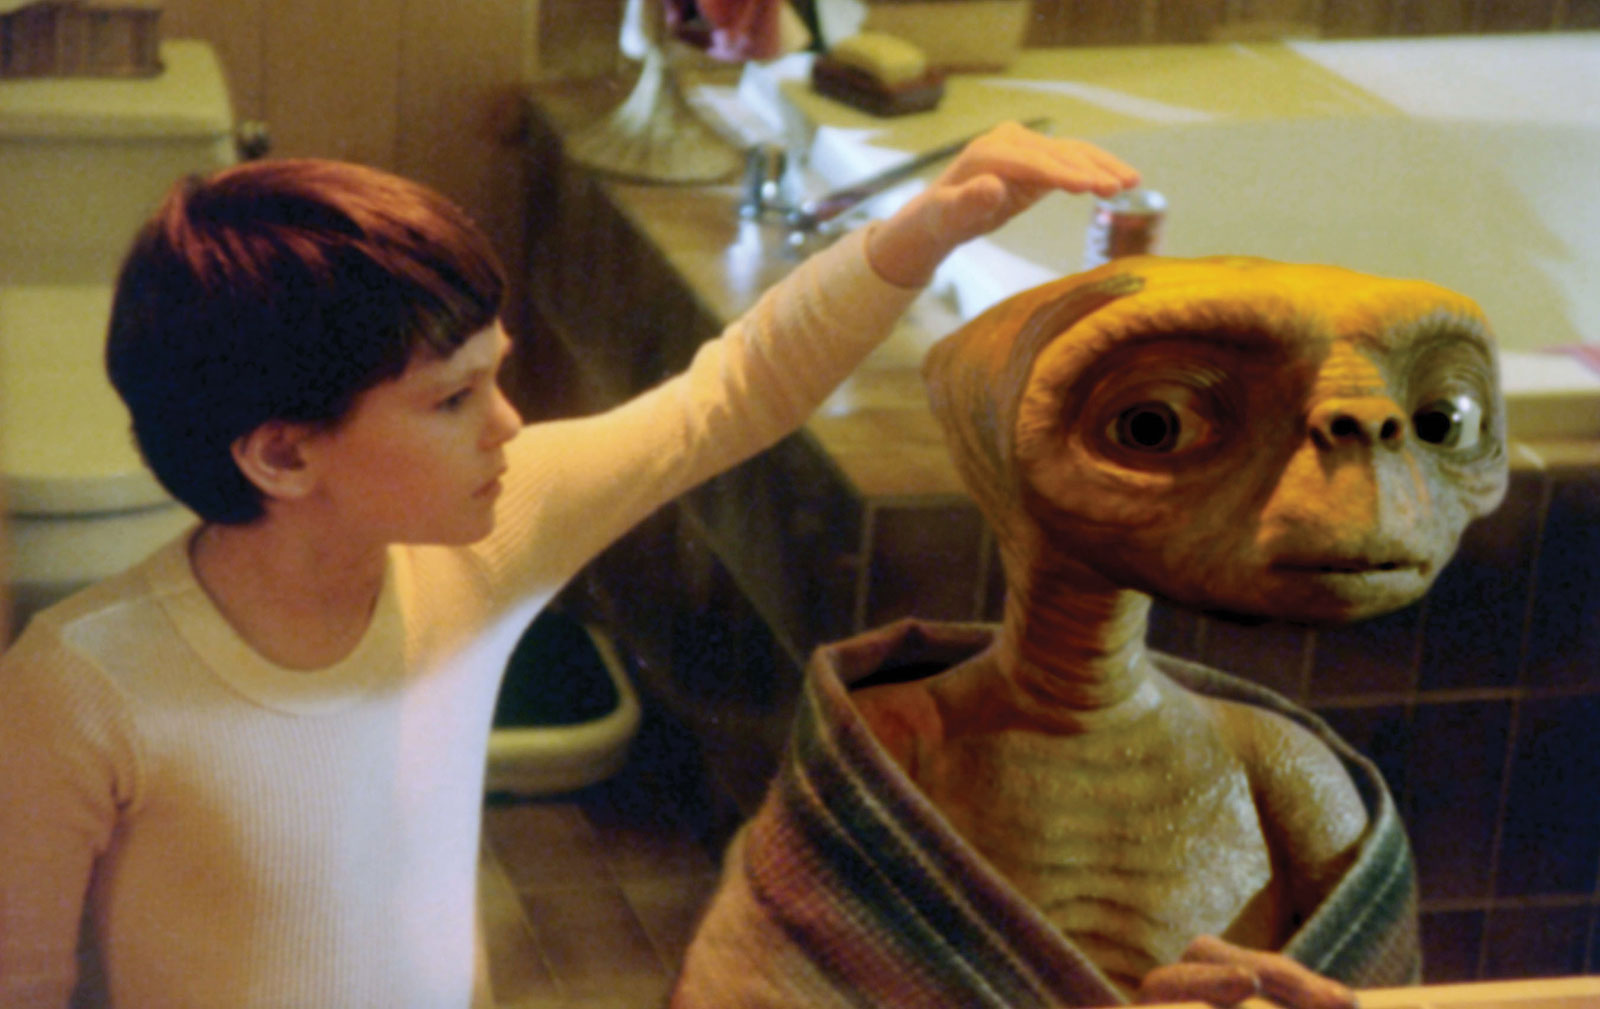 Popularitas Film E.T The Extra Terrestrial